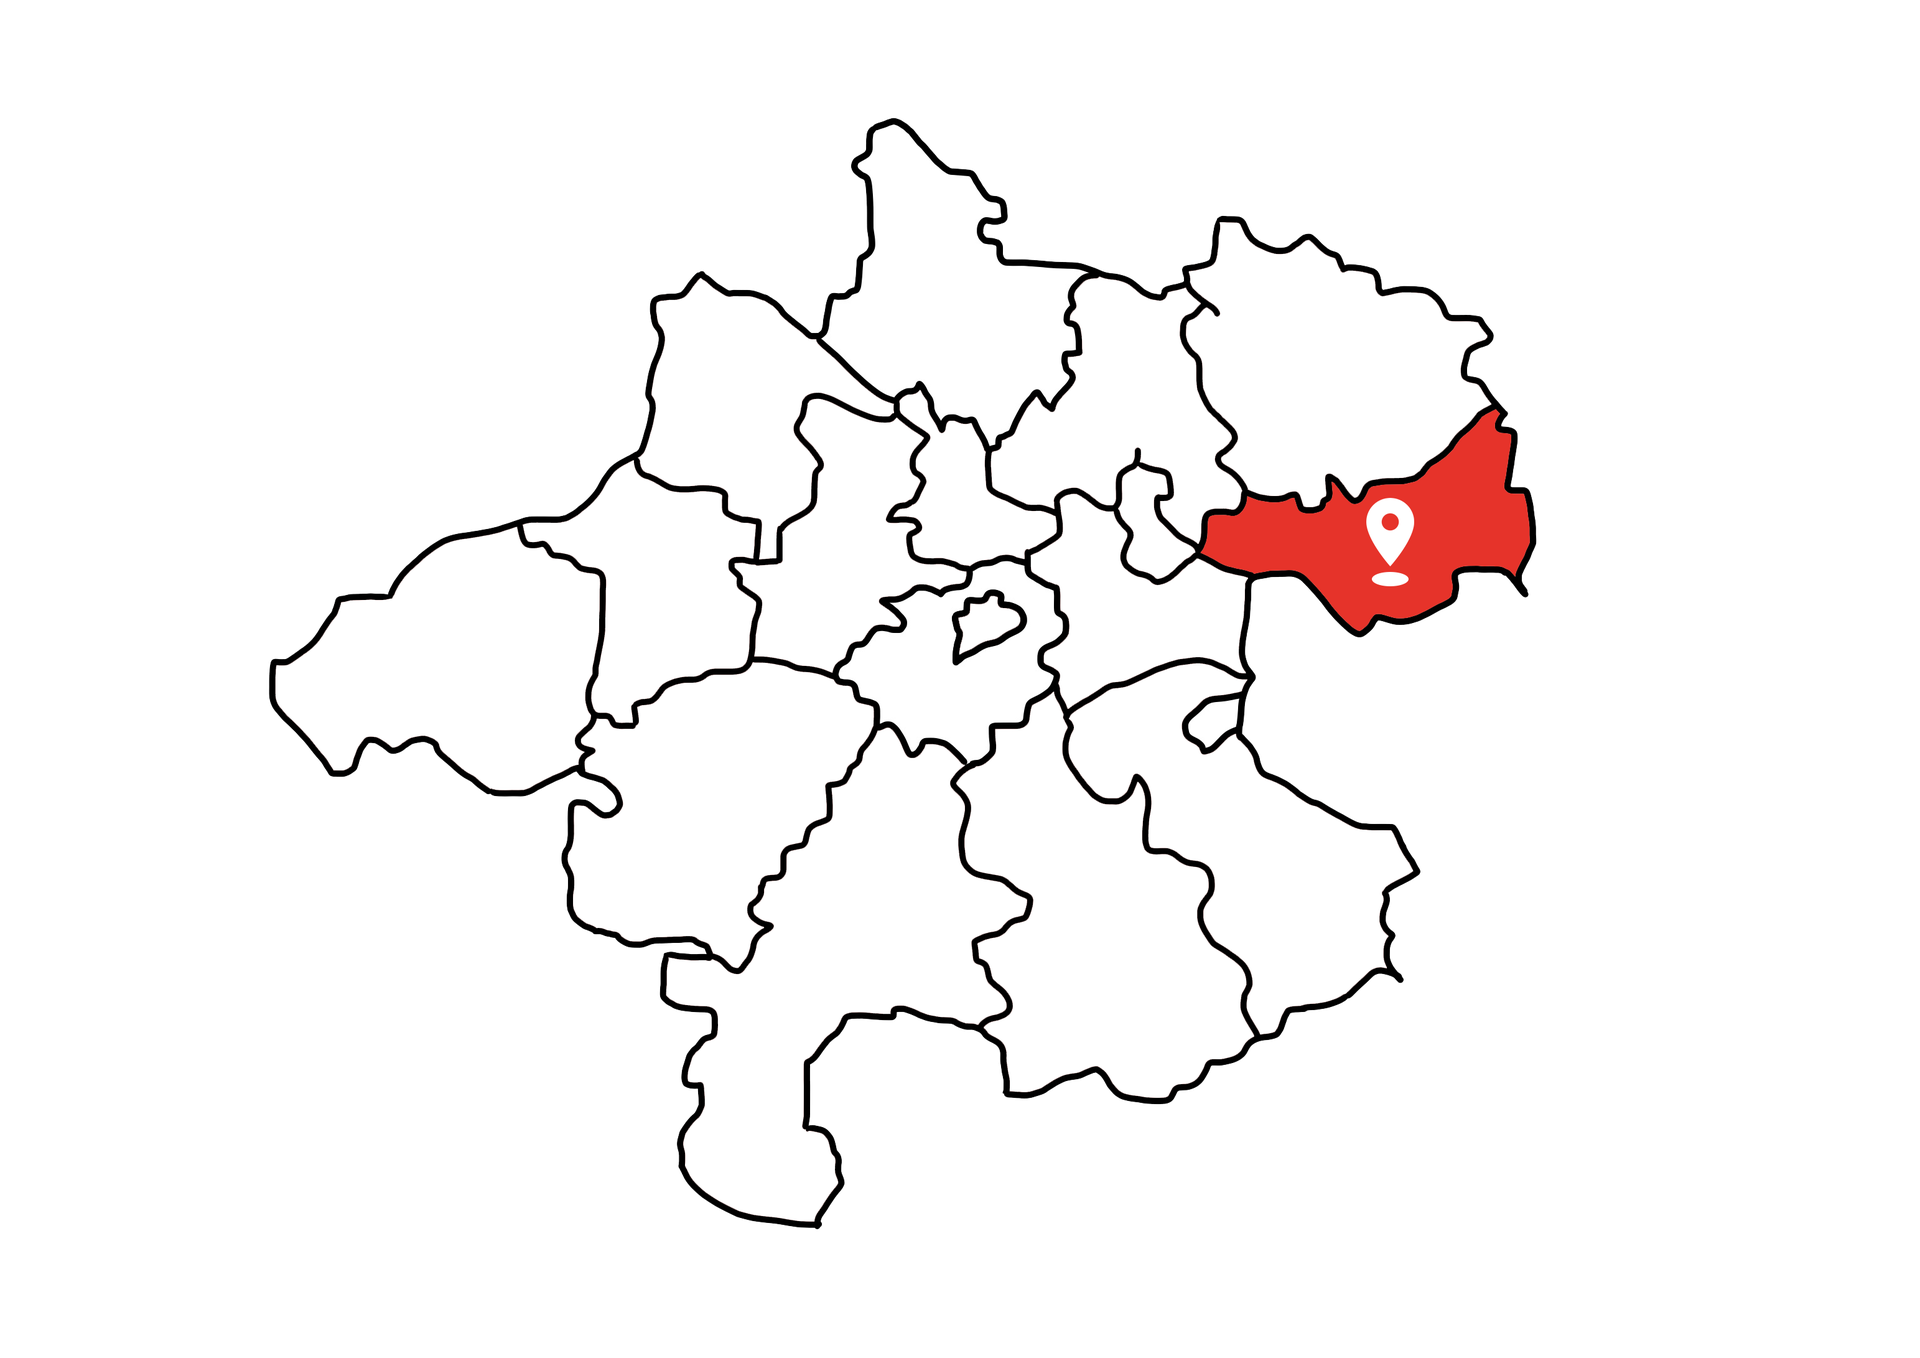 Eine Landkarte die Oberösterreich zeigt. Der Bezirk Perg ist rot markiert. Die restlichen Bezirke sind weiß.